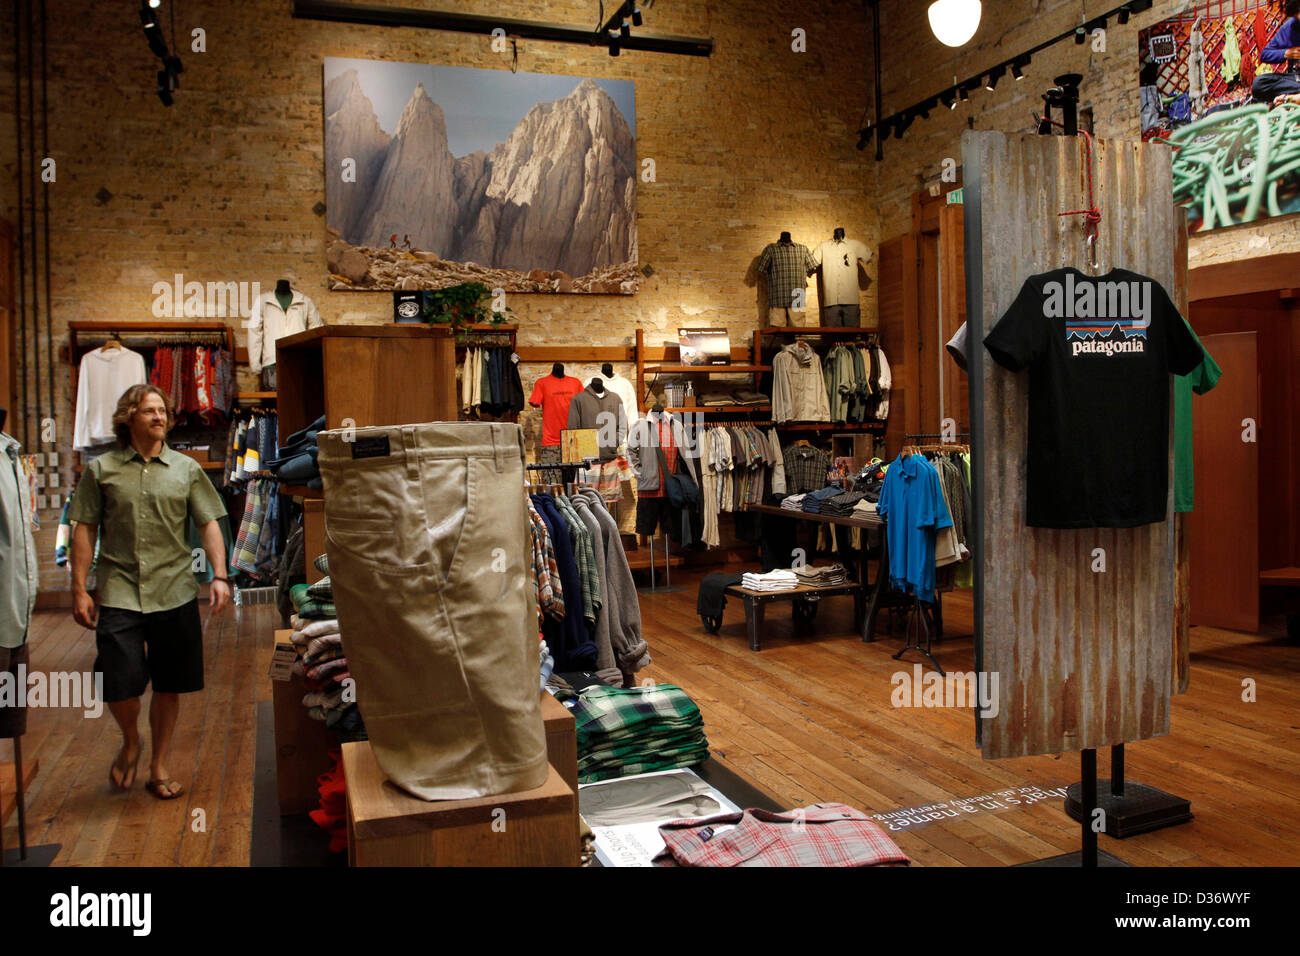 Jun 08, 2012 - Ventura, California, EE.UU. - La tienda minorista en la  Patagonia. Patagonia produce alta gama de ropa exterior, ropa de surf,  tablas de surf y de fabricación es miembro